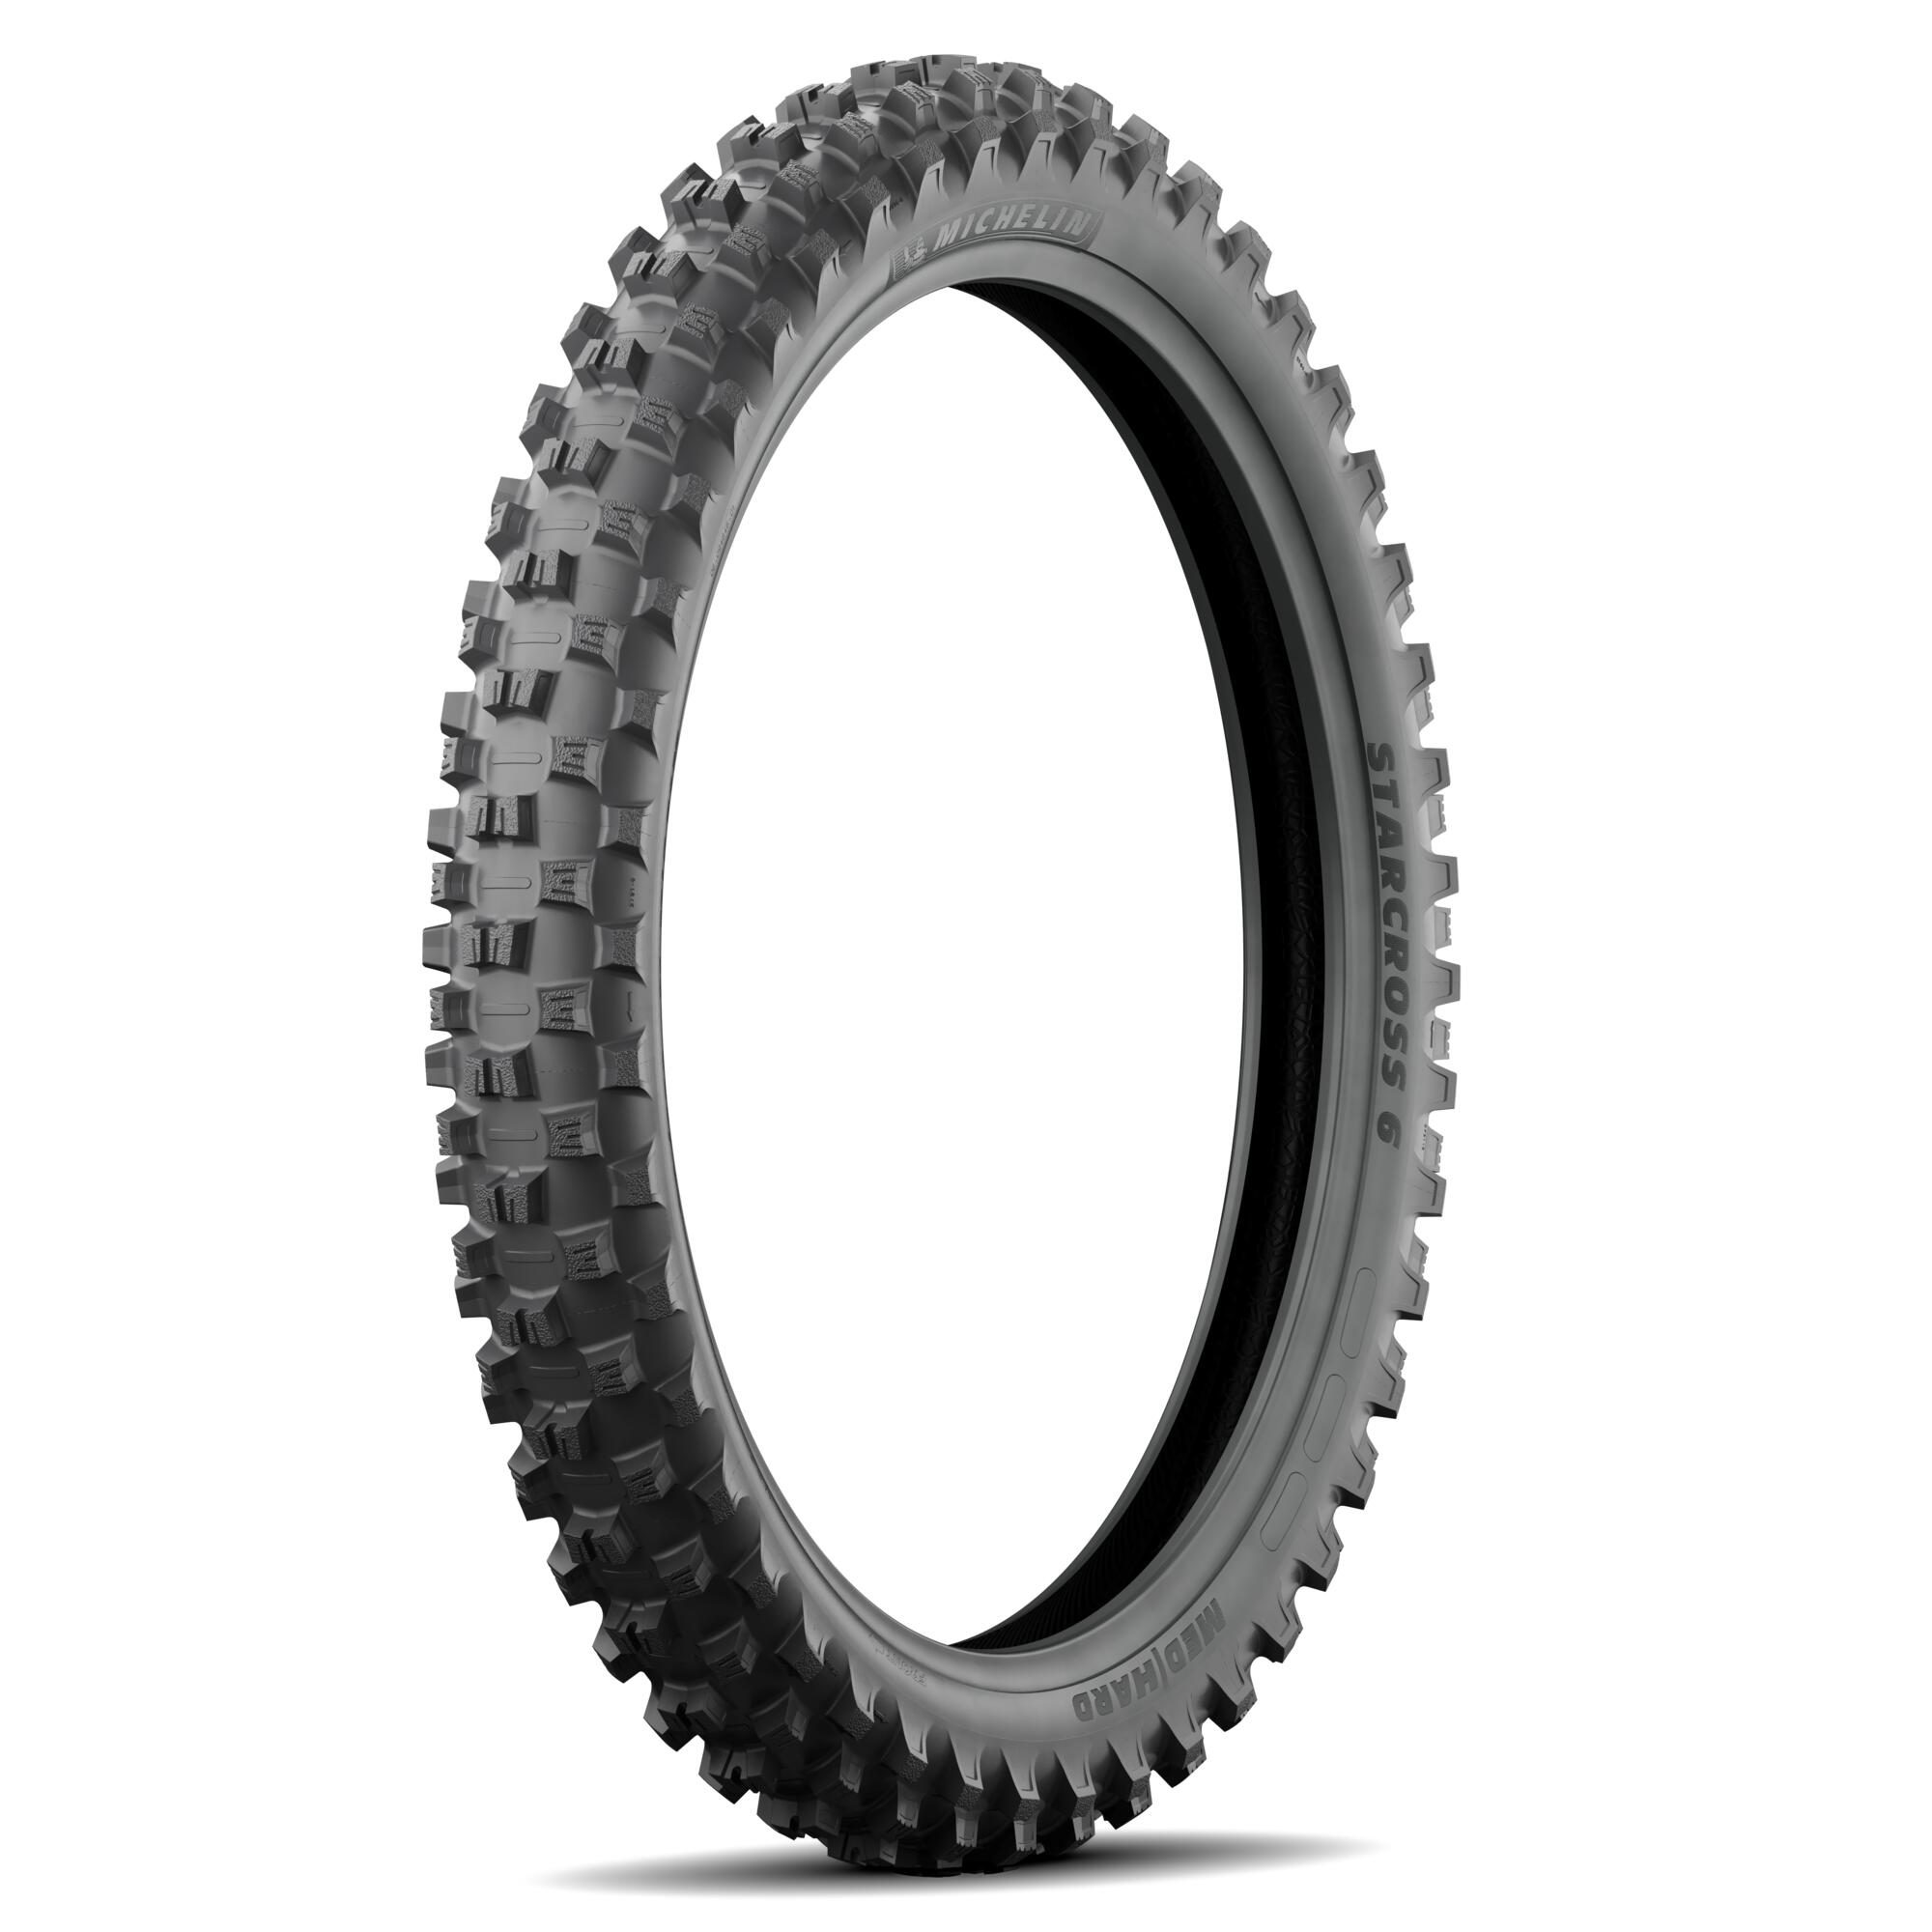 | 6 Reifen: Zweirad-Center Starcross | Melahn.de | | Melahn MICHELIN GmbH Verschleiß- Hard / Sturzteile | Zubehör Reifen Reifen + 80/100-21 Medium